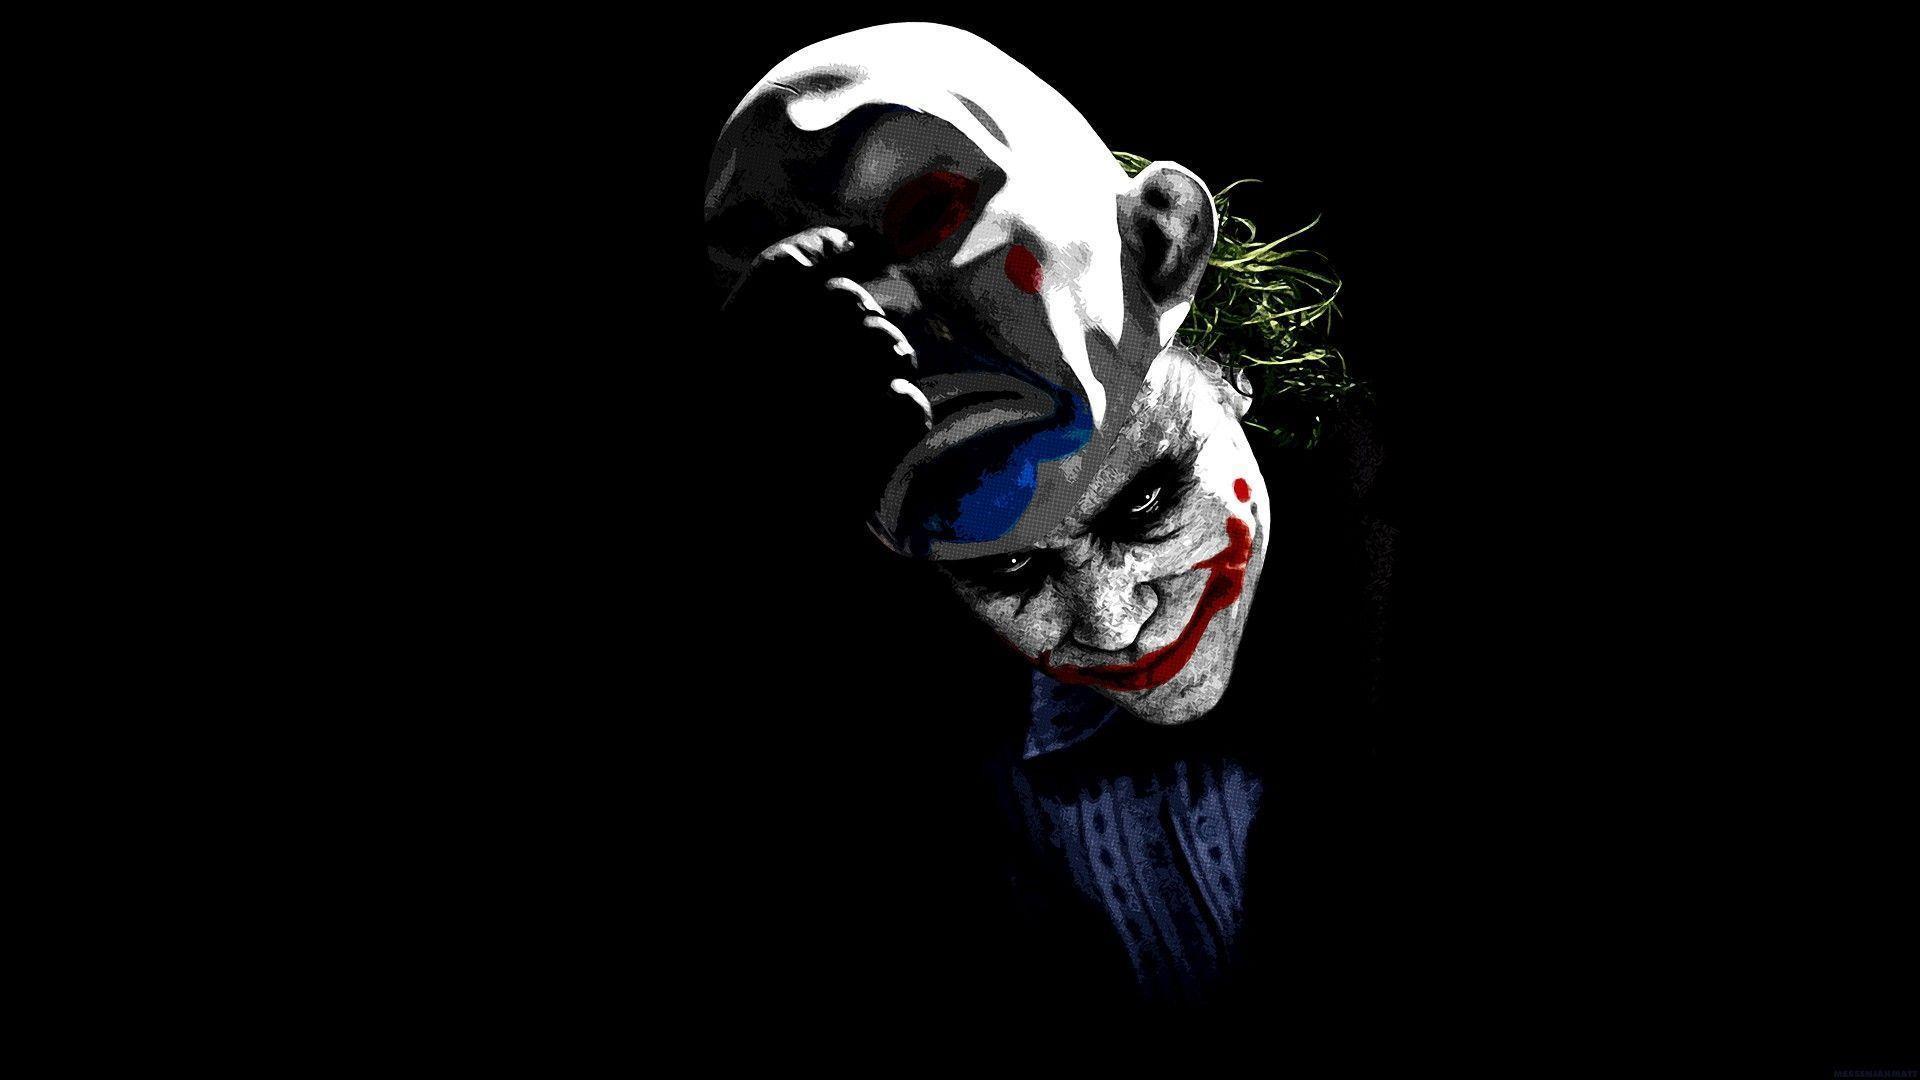 Scary Joker Image HD Wallpaper